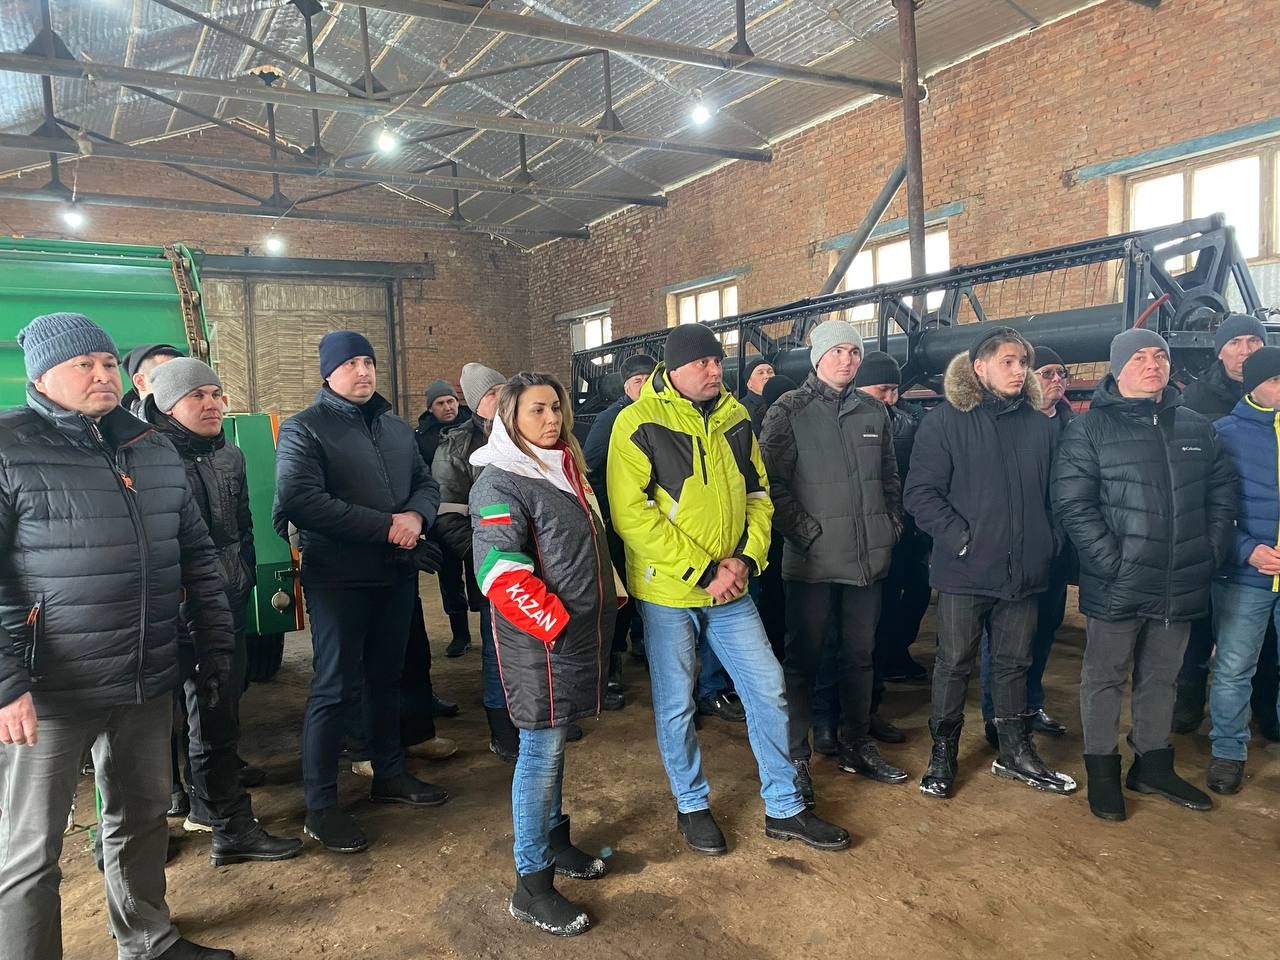 Данил Һадиев исемендәге крестьян-фермер хуҗалыгында семинар-киңәшмә булды